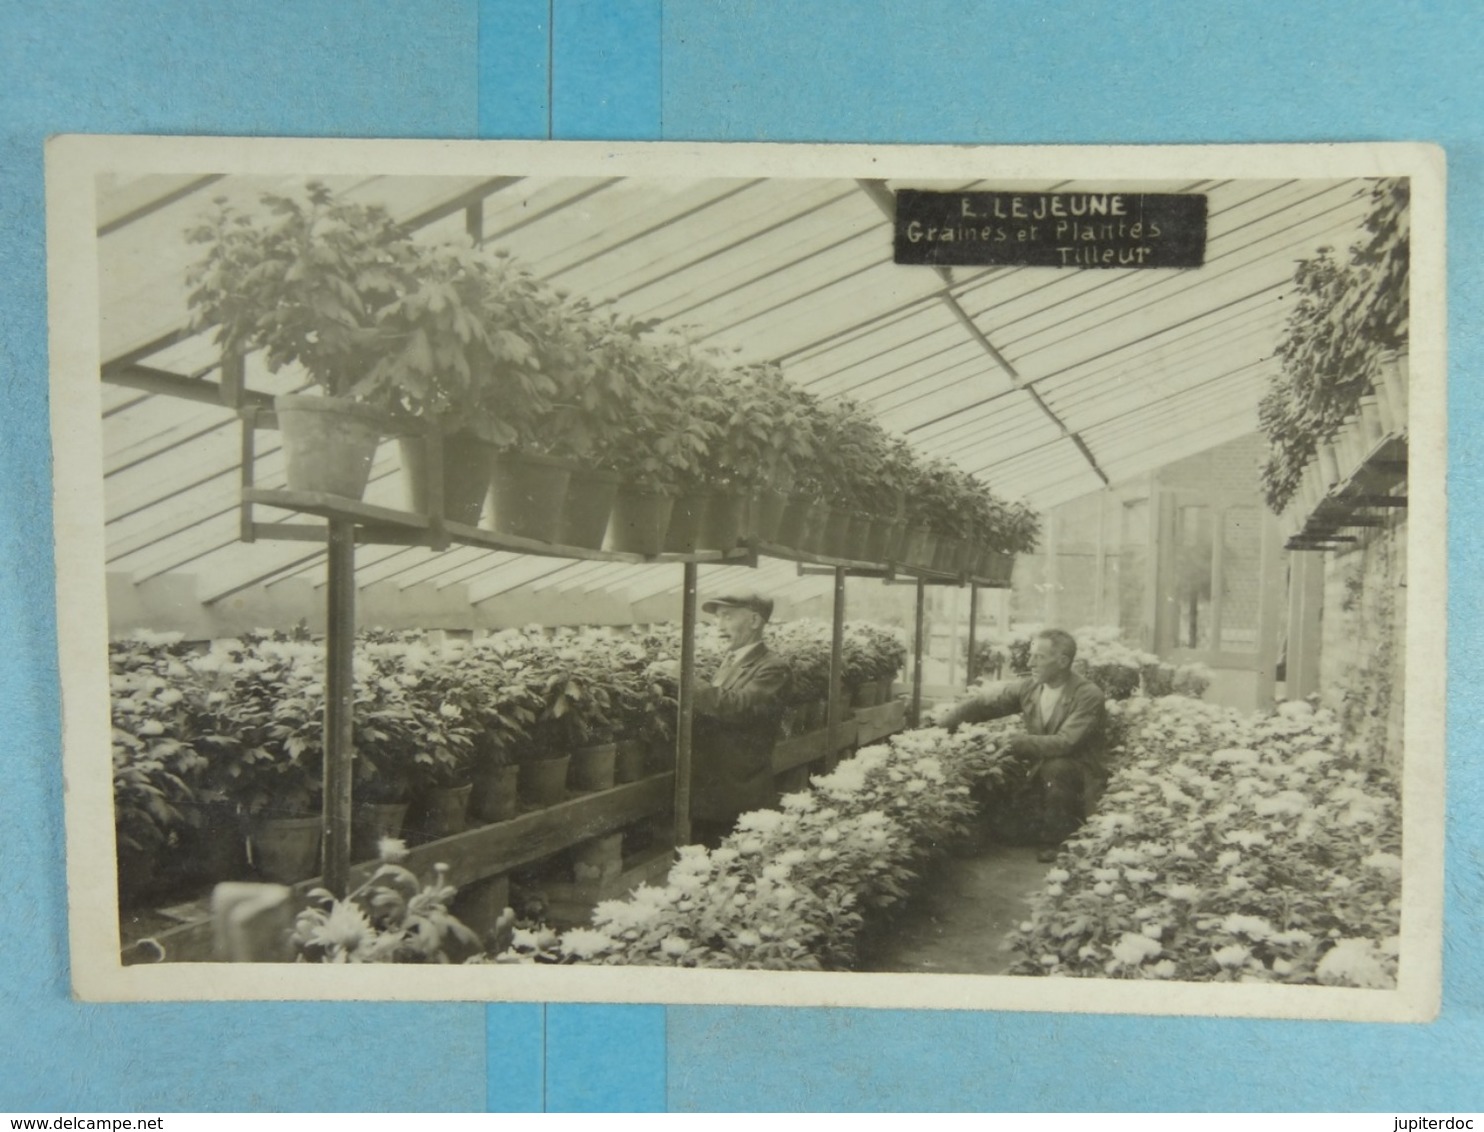 Carte Photo Tilleur Graines Et Plantes Lejeune 1924 - Saint-Nicolas